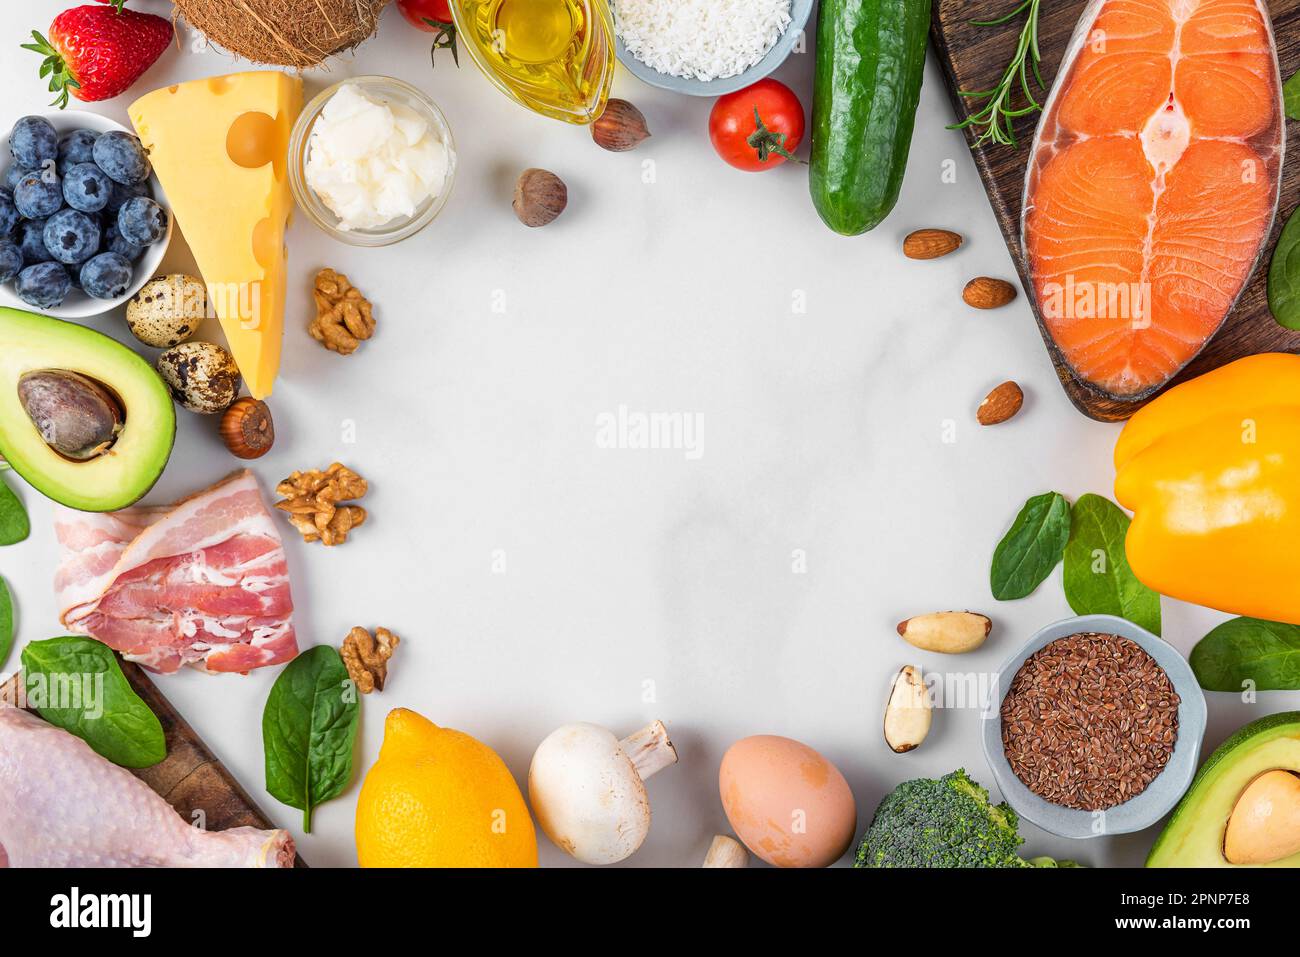 Gesunde, ausgewogene Ernährung. Keto, Low Carb, atkins-Diät-Konzept. Rahmen aus Fisch, Fleisch, Obst und Gemüse auf weißem Hintergrund. Draufsicht Stockfoto